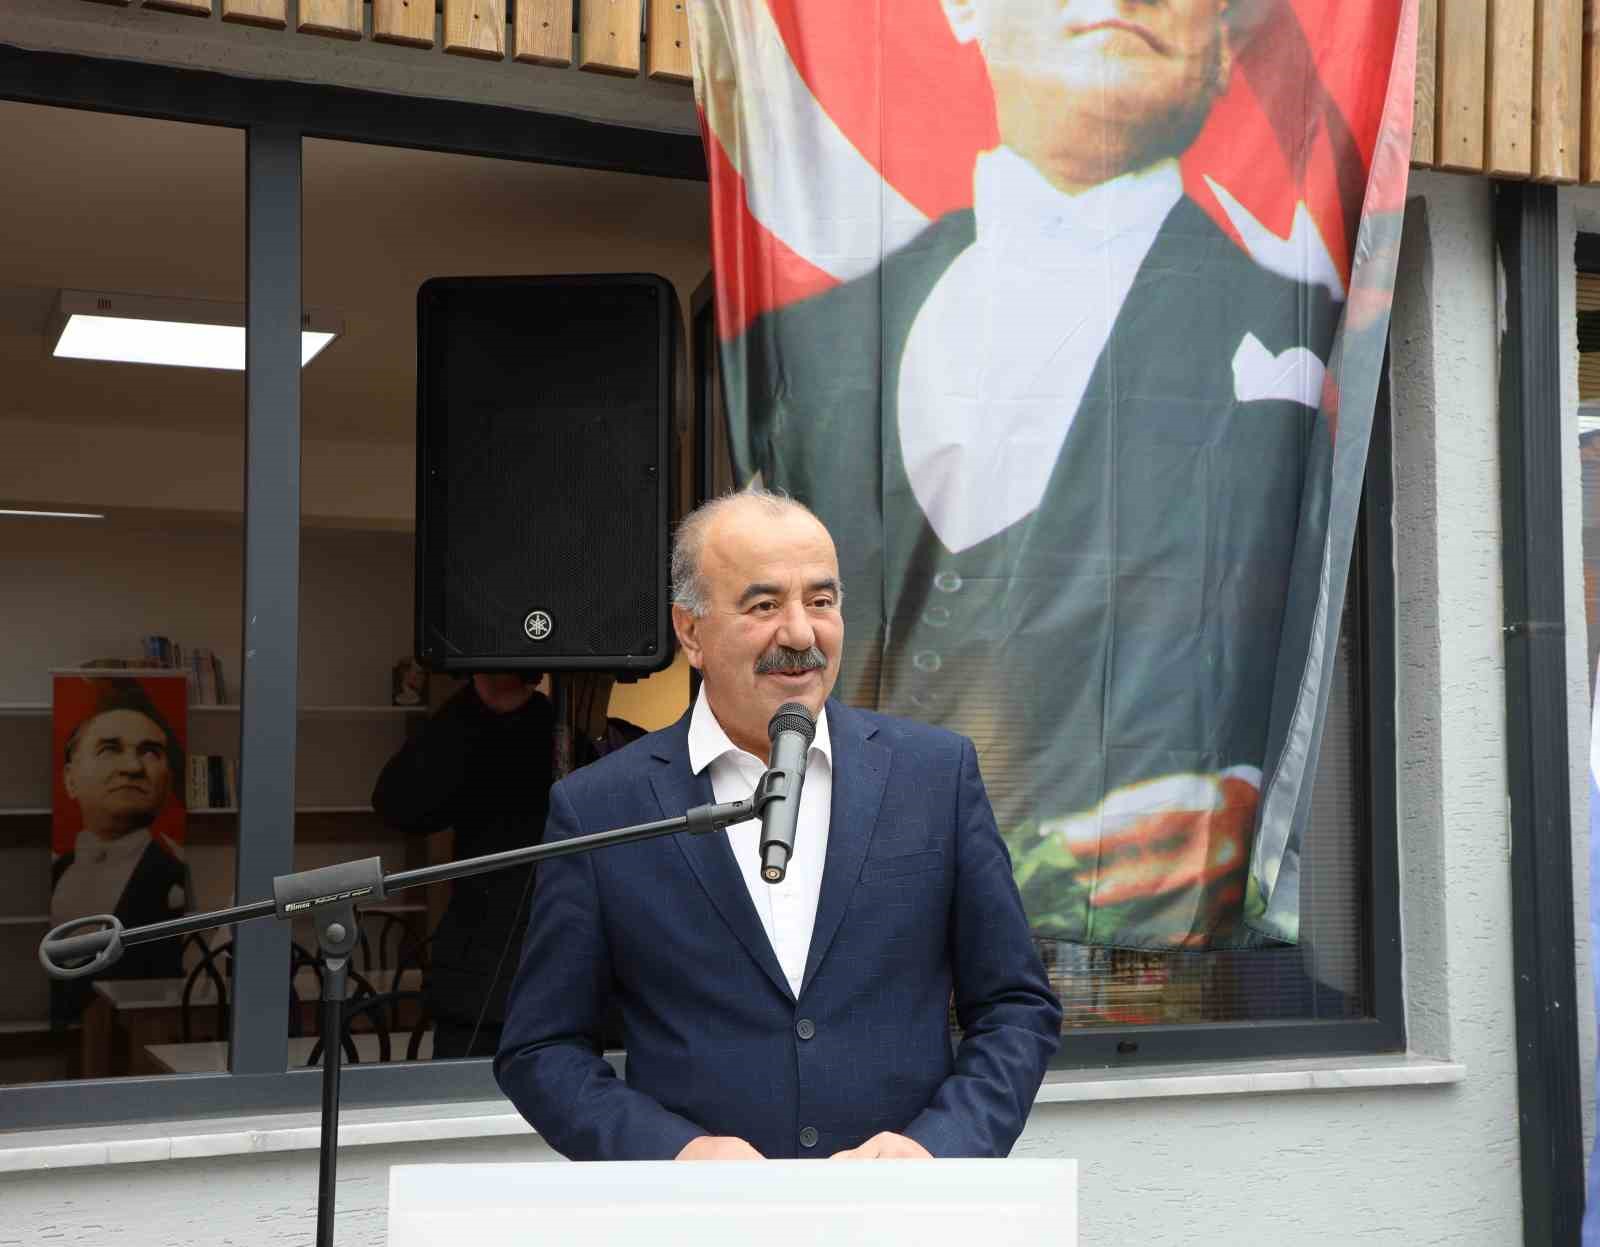 Mudanya Cumhuriyet Gençliği Spor ve Kültür Evi açıldı